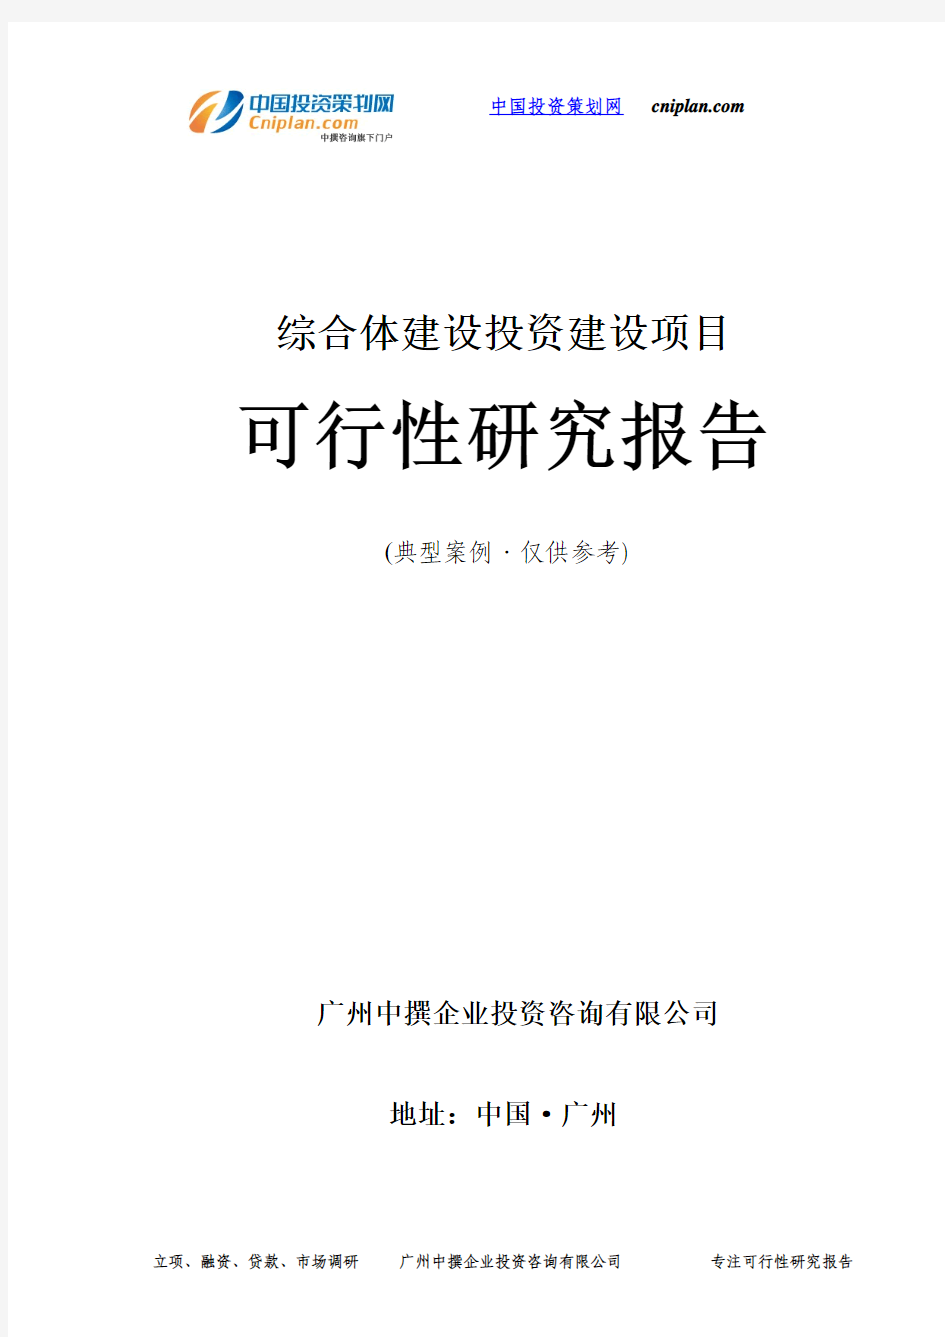 综合体建设投资建设项目可行性研究报告-广州中撰咨询